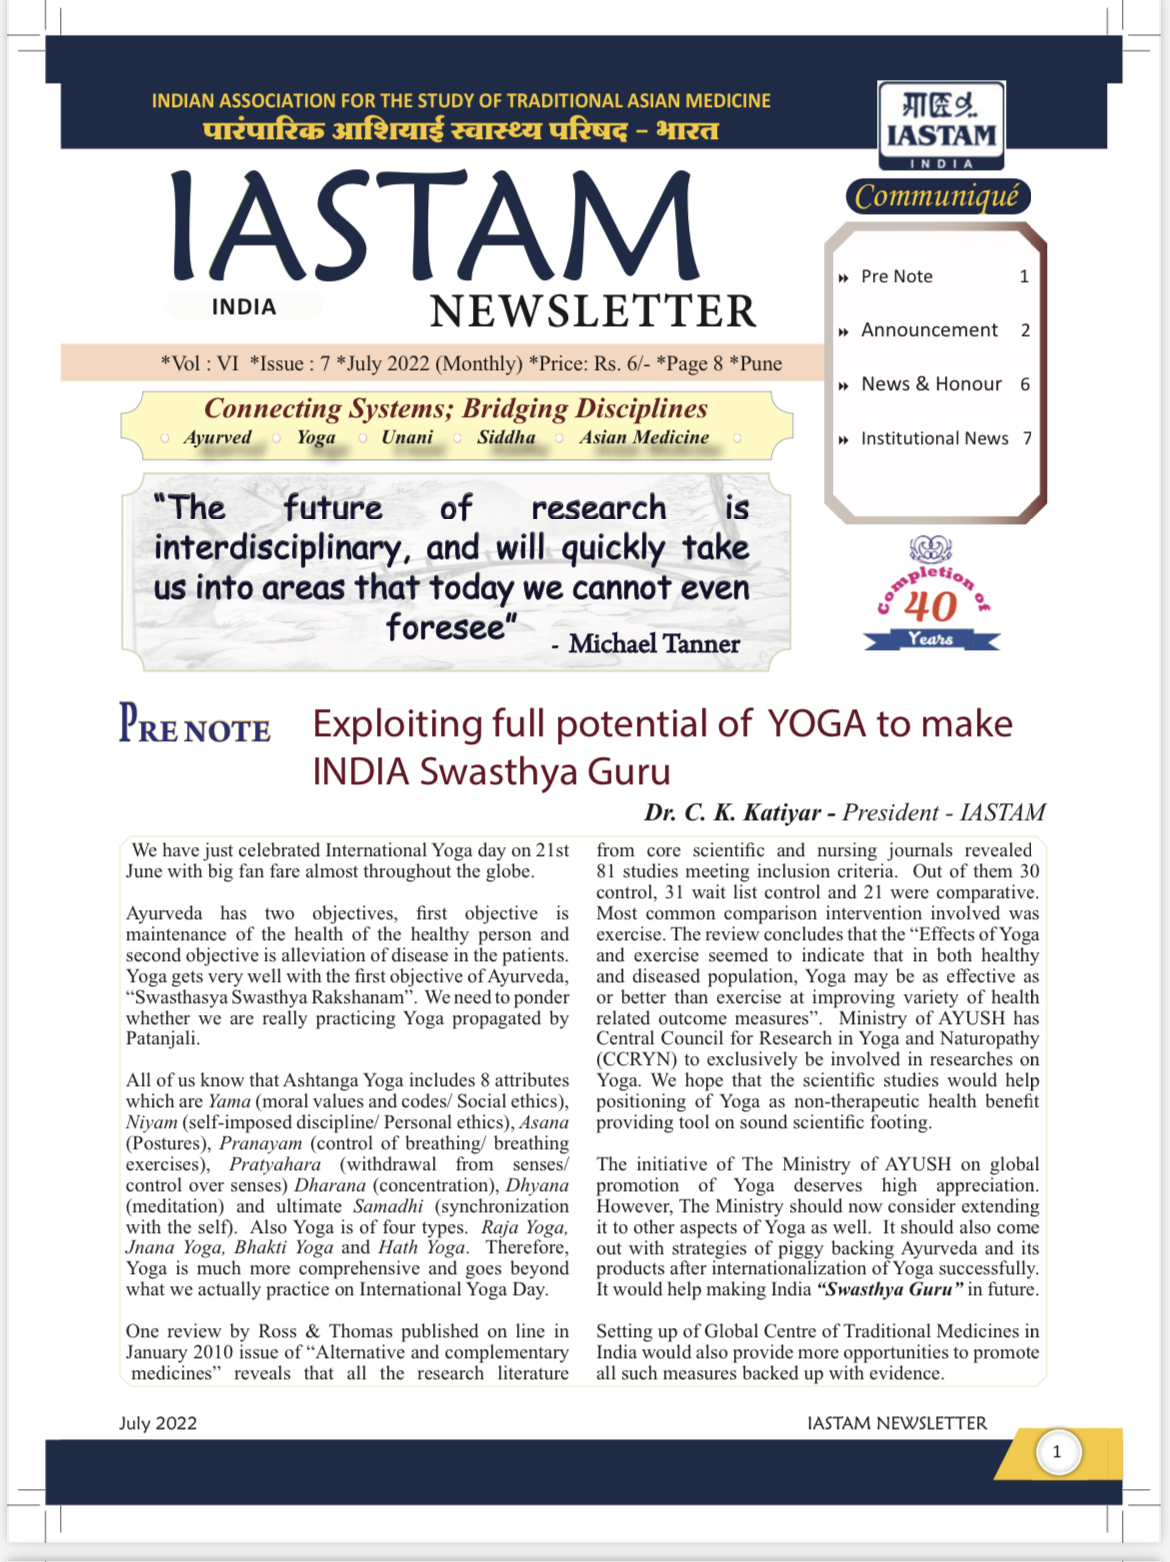 IASTAM Newsletter July 2022